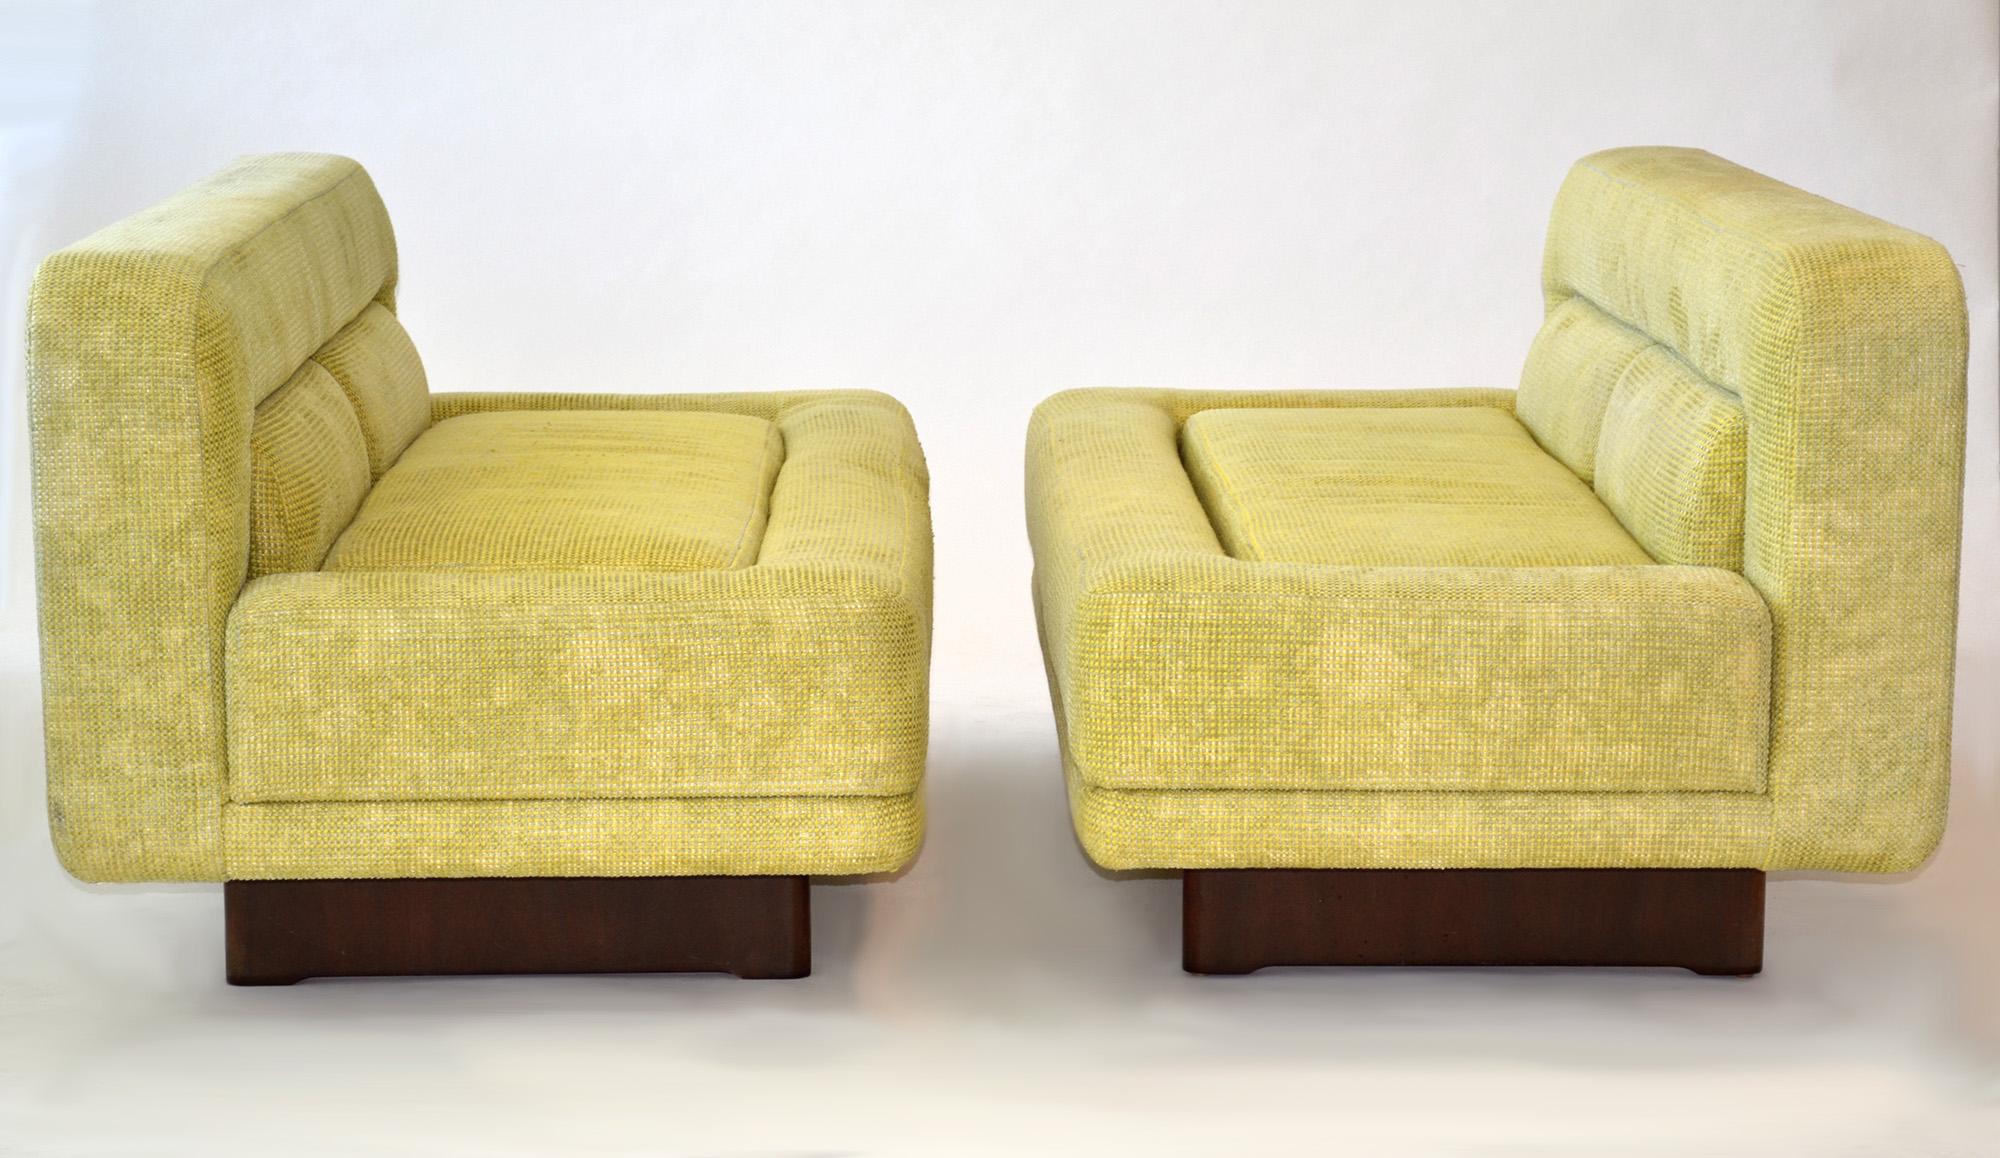 Paire rare de canapés ou fauteuils futuristes Vladimir Kagan Designs, 1970

Cette paire exceptionnelle de canapés, de causeuses ou de canapés rembourrés assortis est l'incarnation de la philosophie visionnaire de Vladimir Kagan en matière de design.